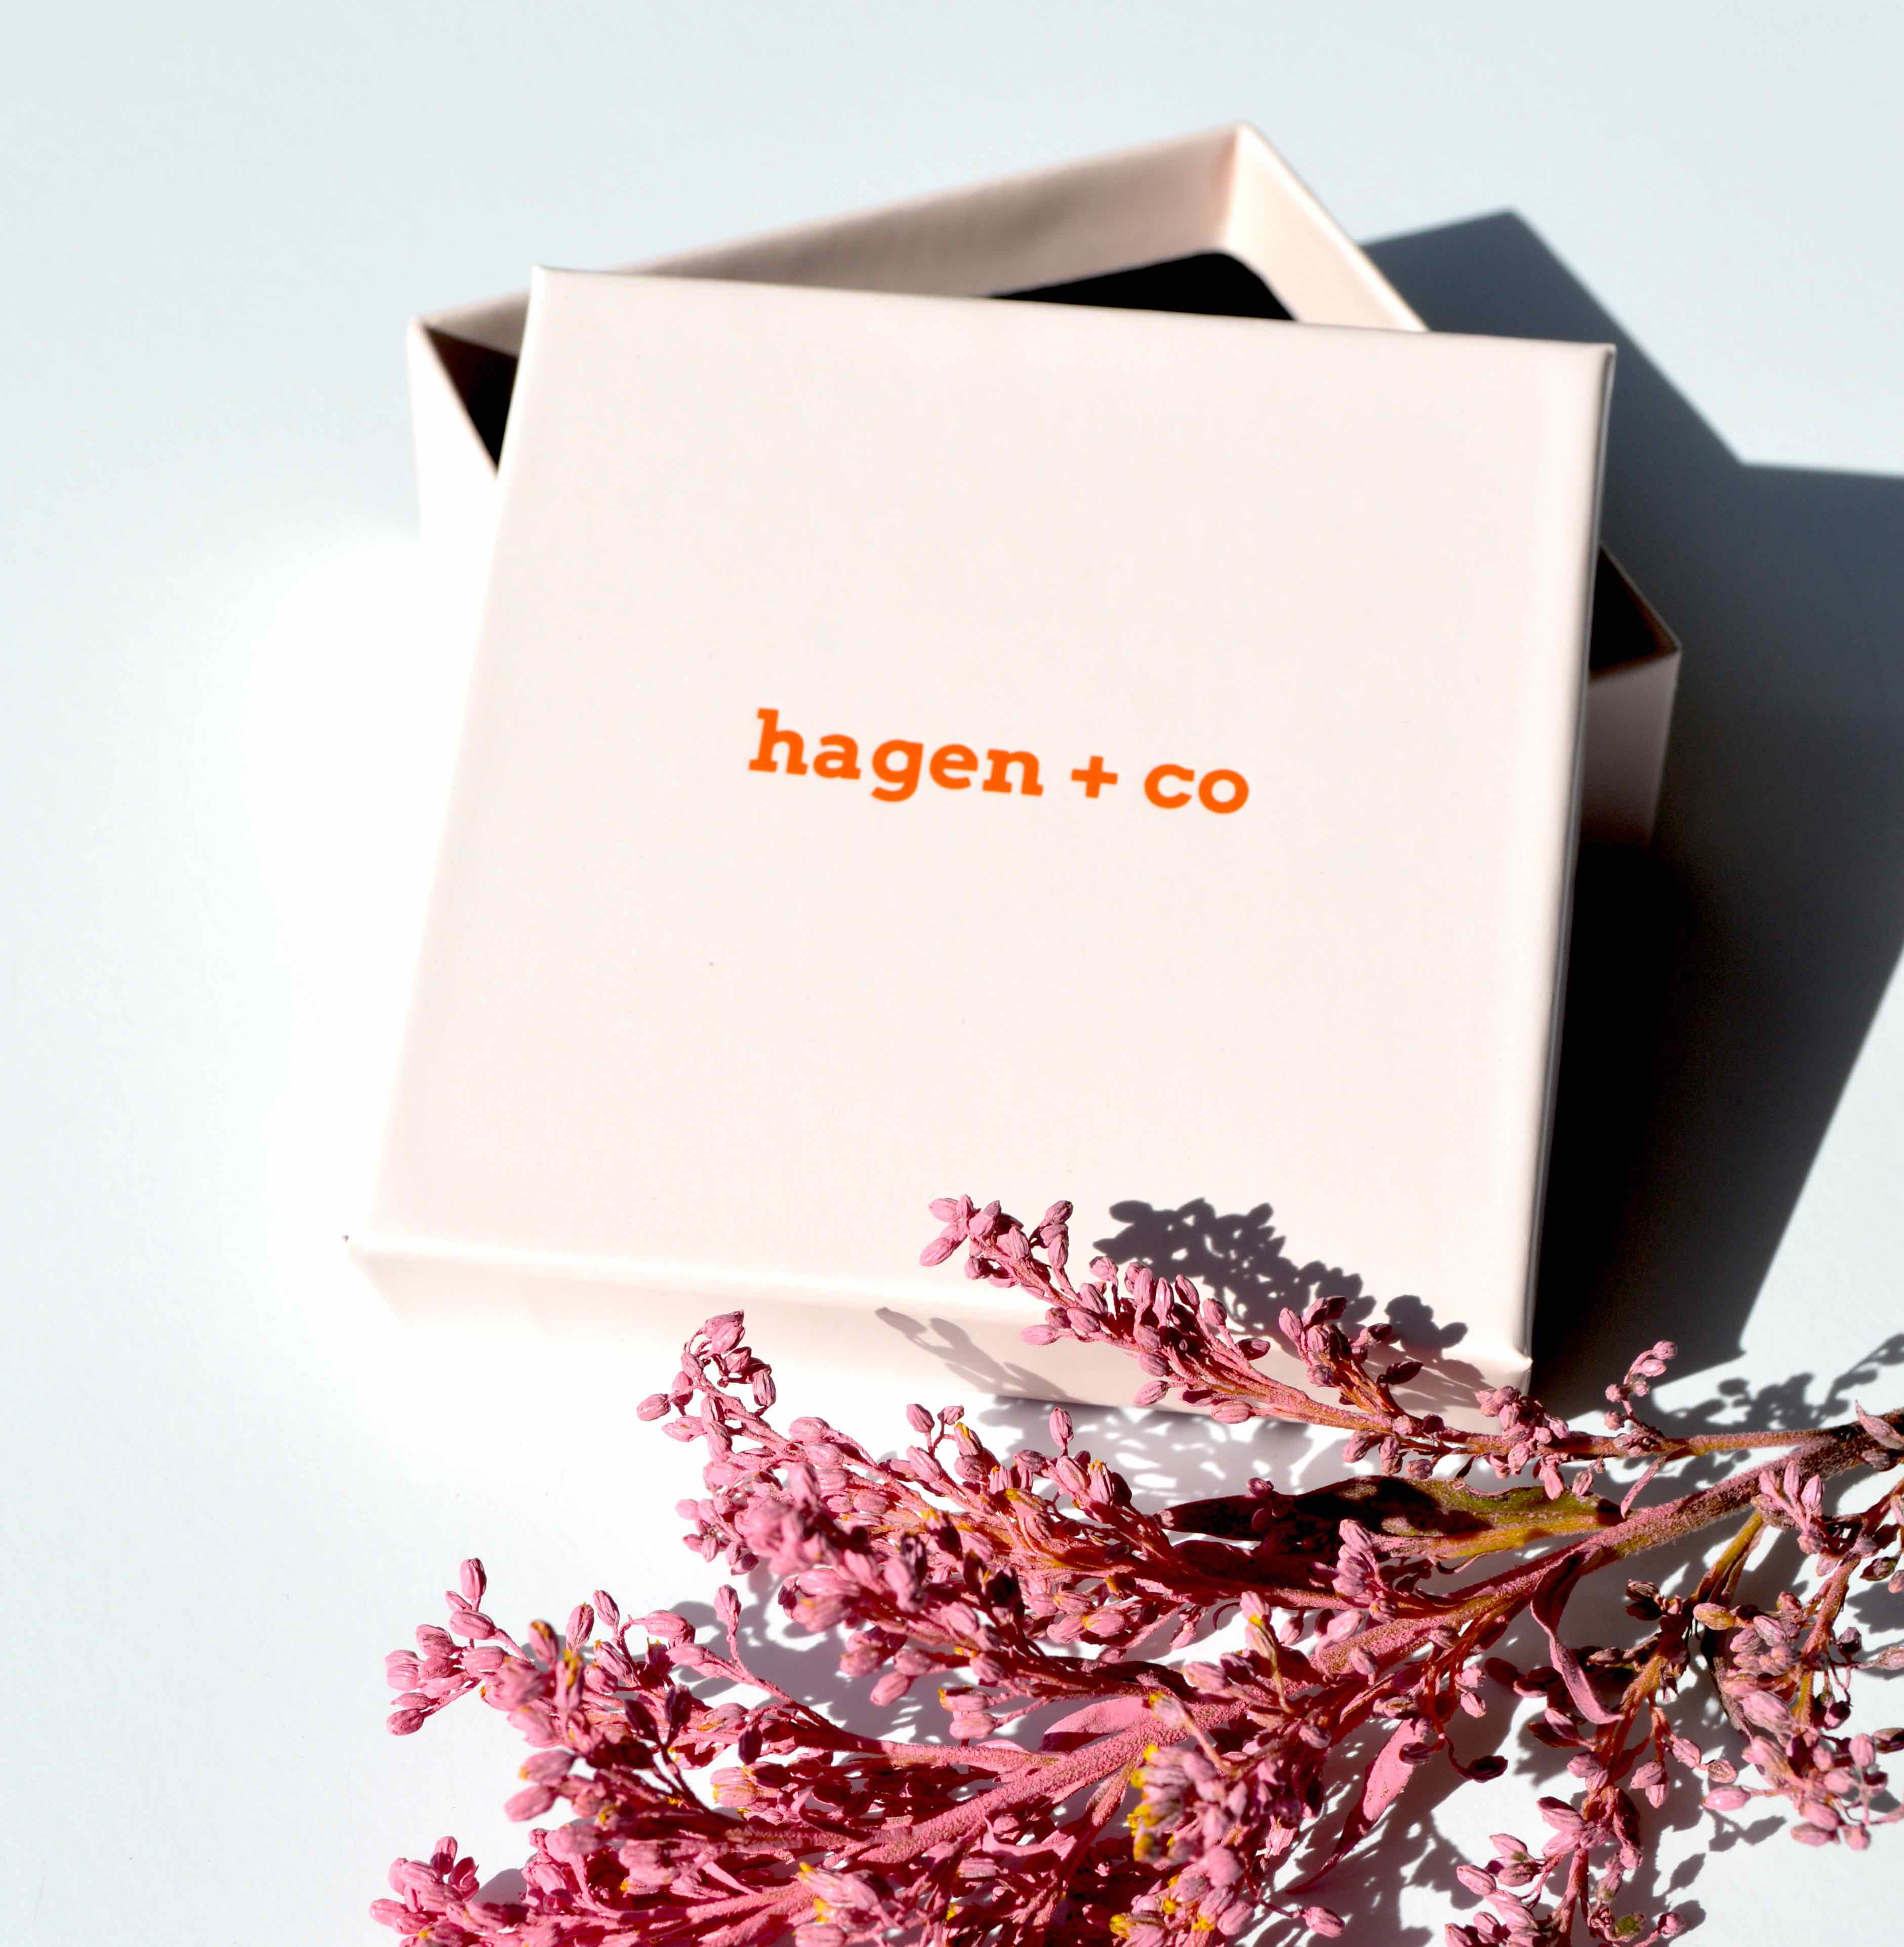 Hagen & Co. Earrings - Tiny Dancer - Confetti Electric Blue